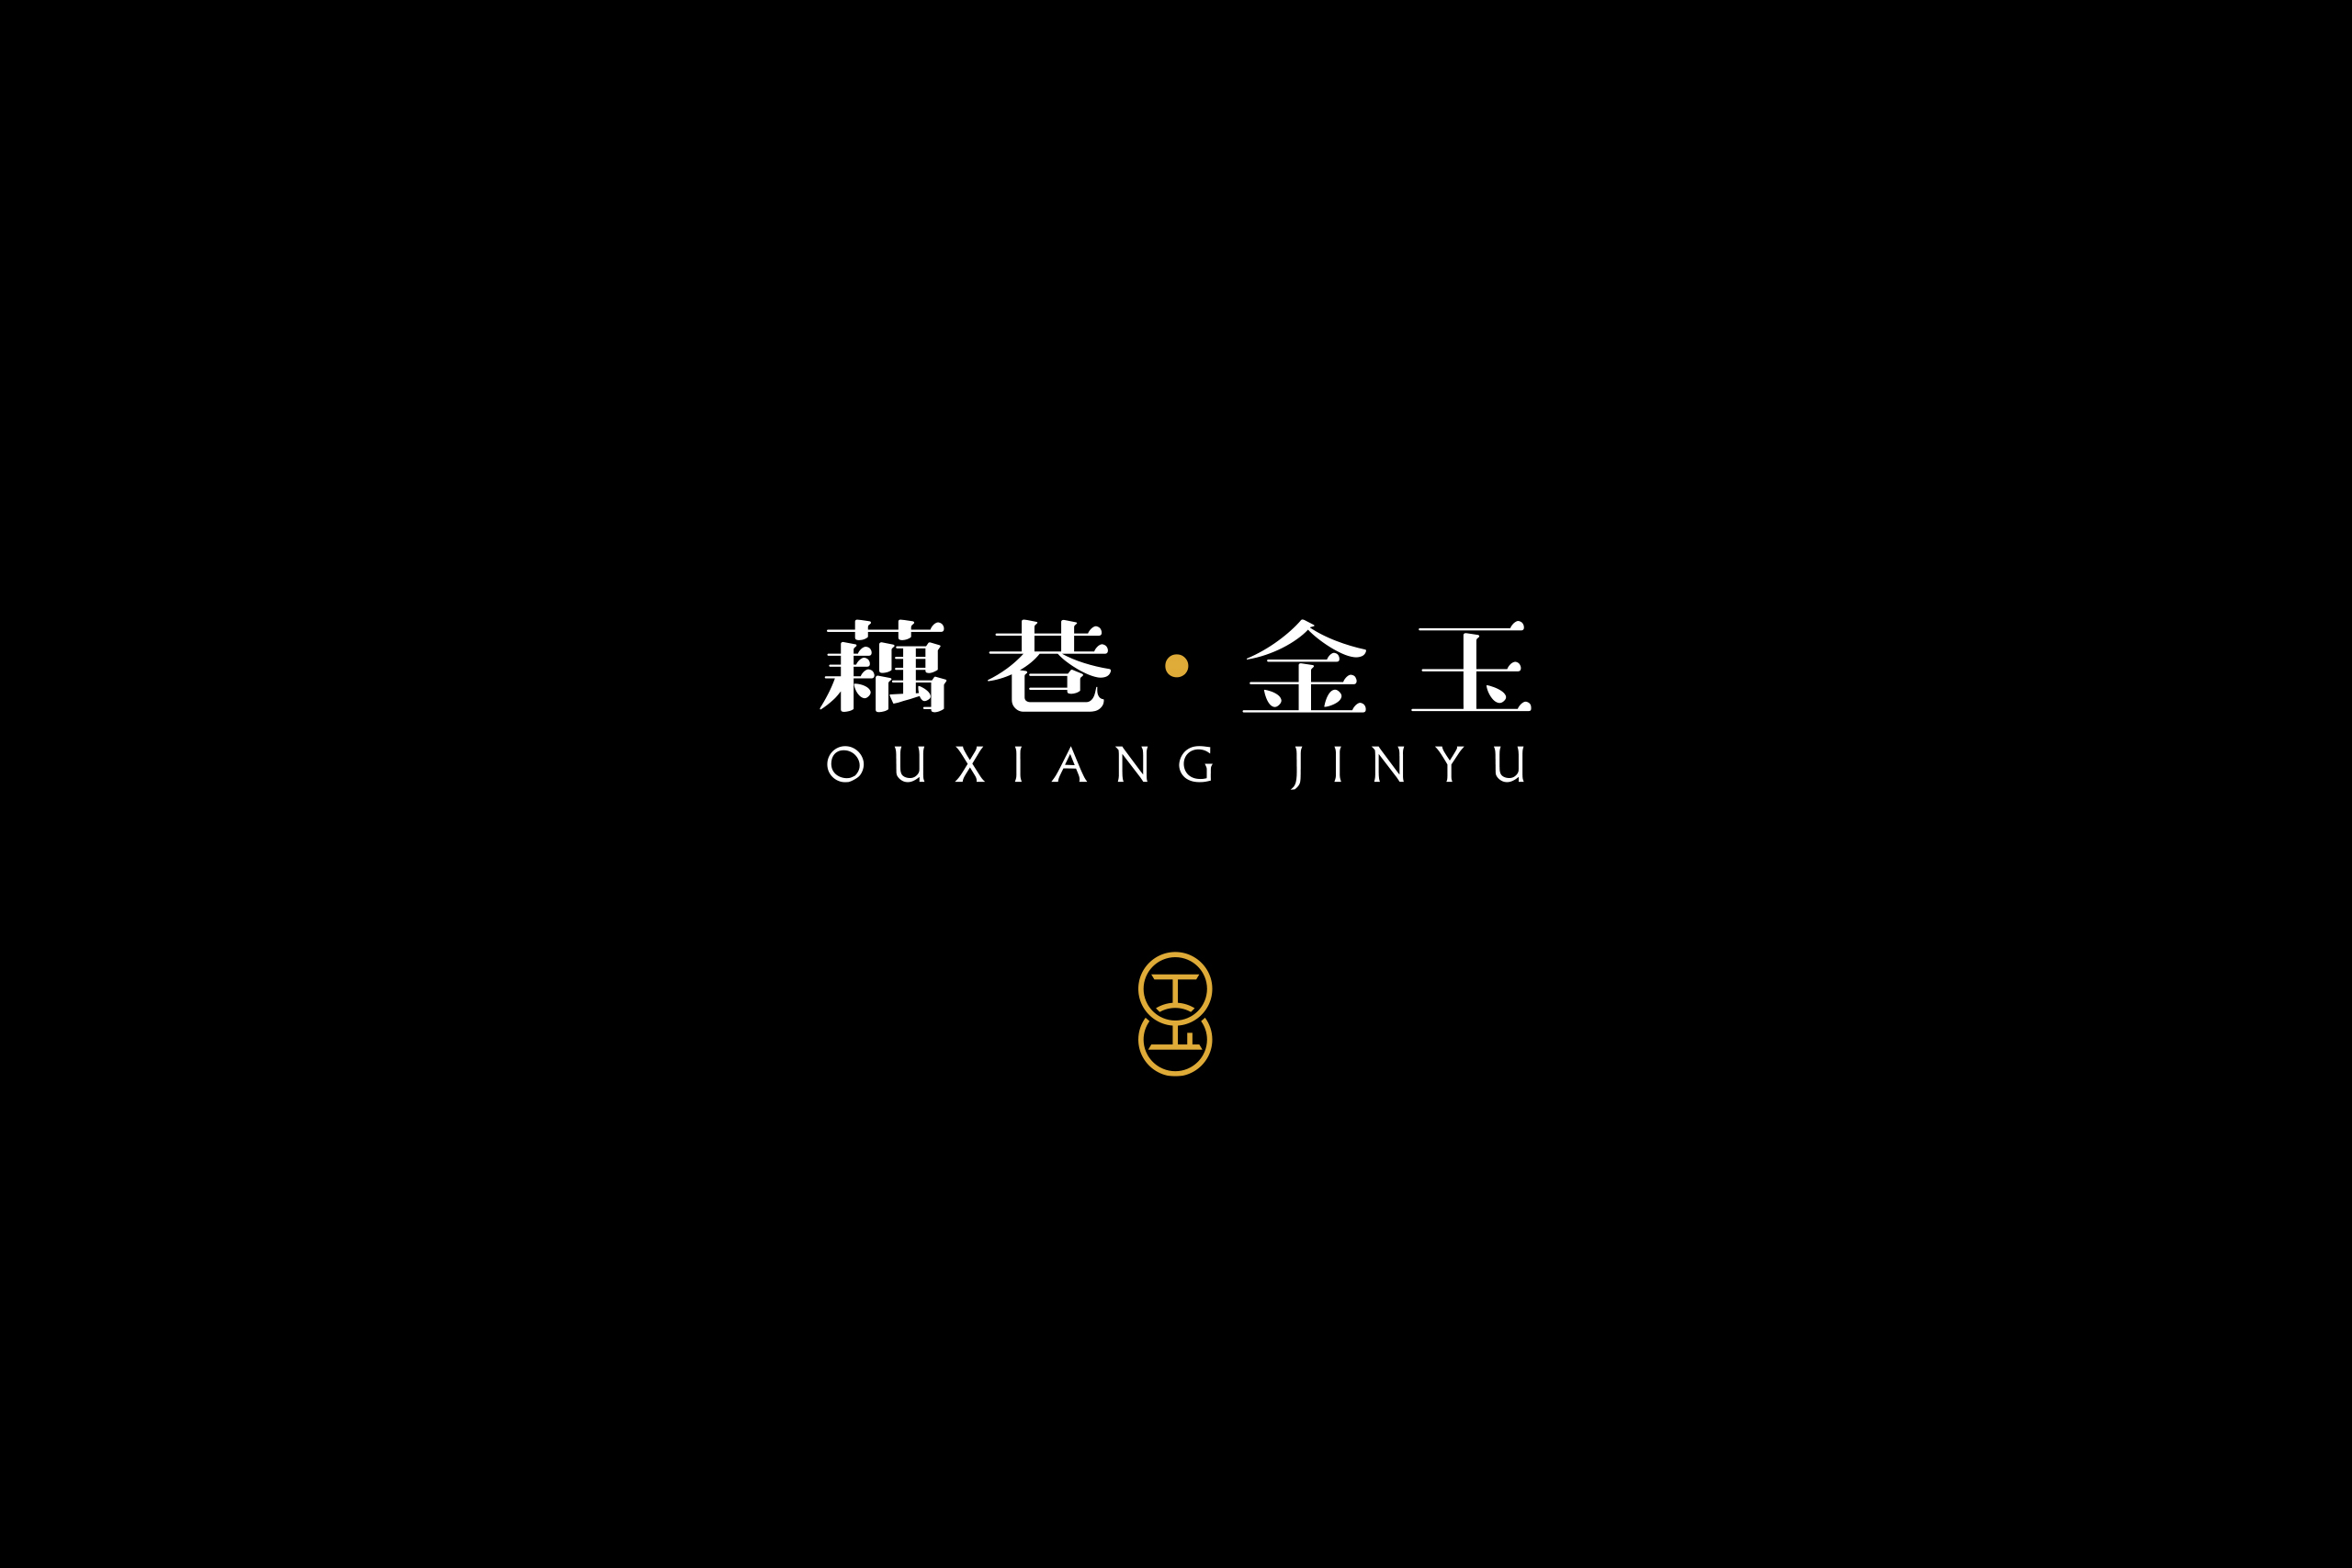 QIU_OUXIANG_15